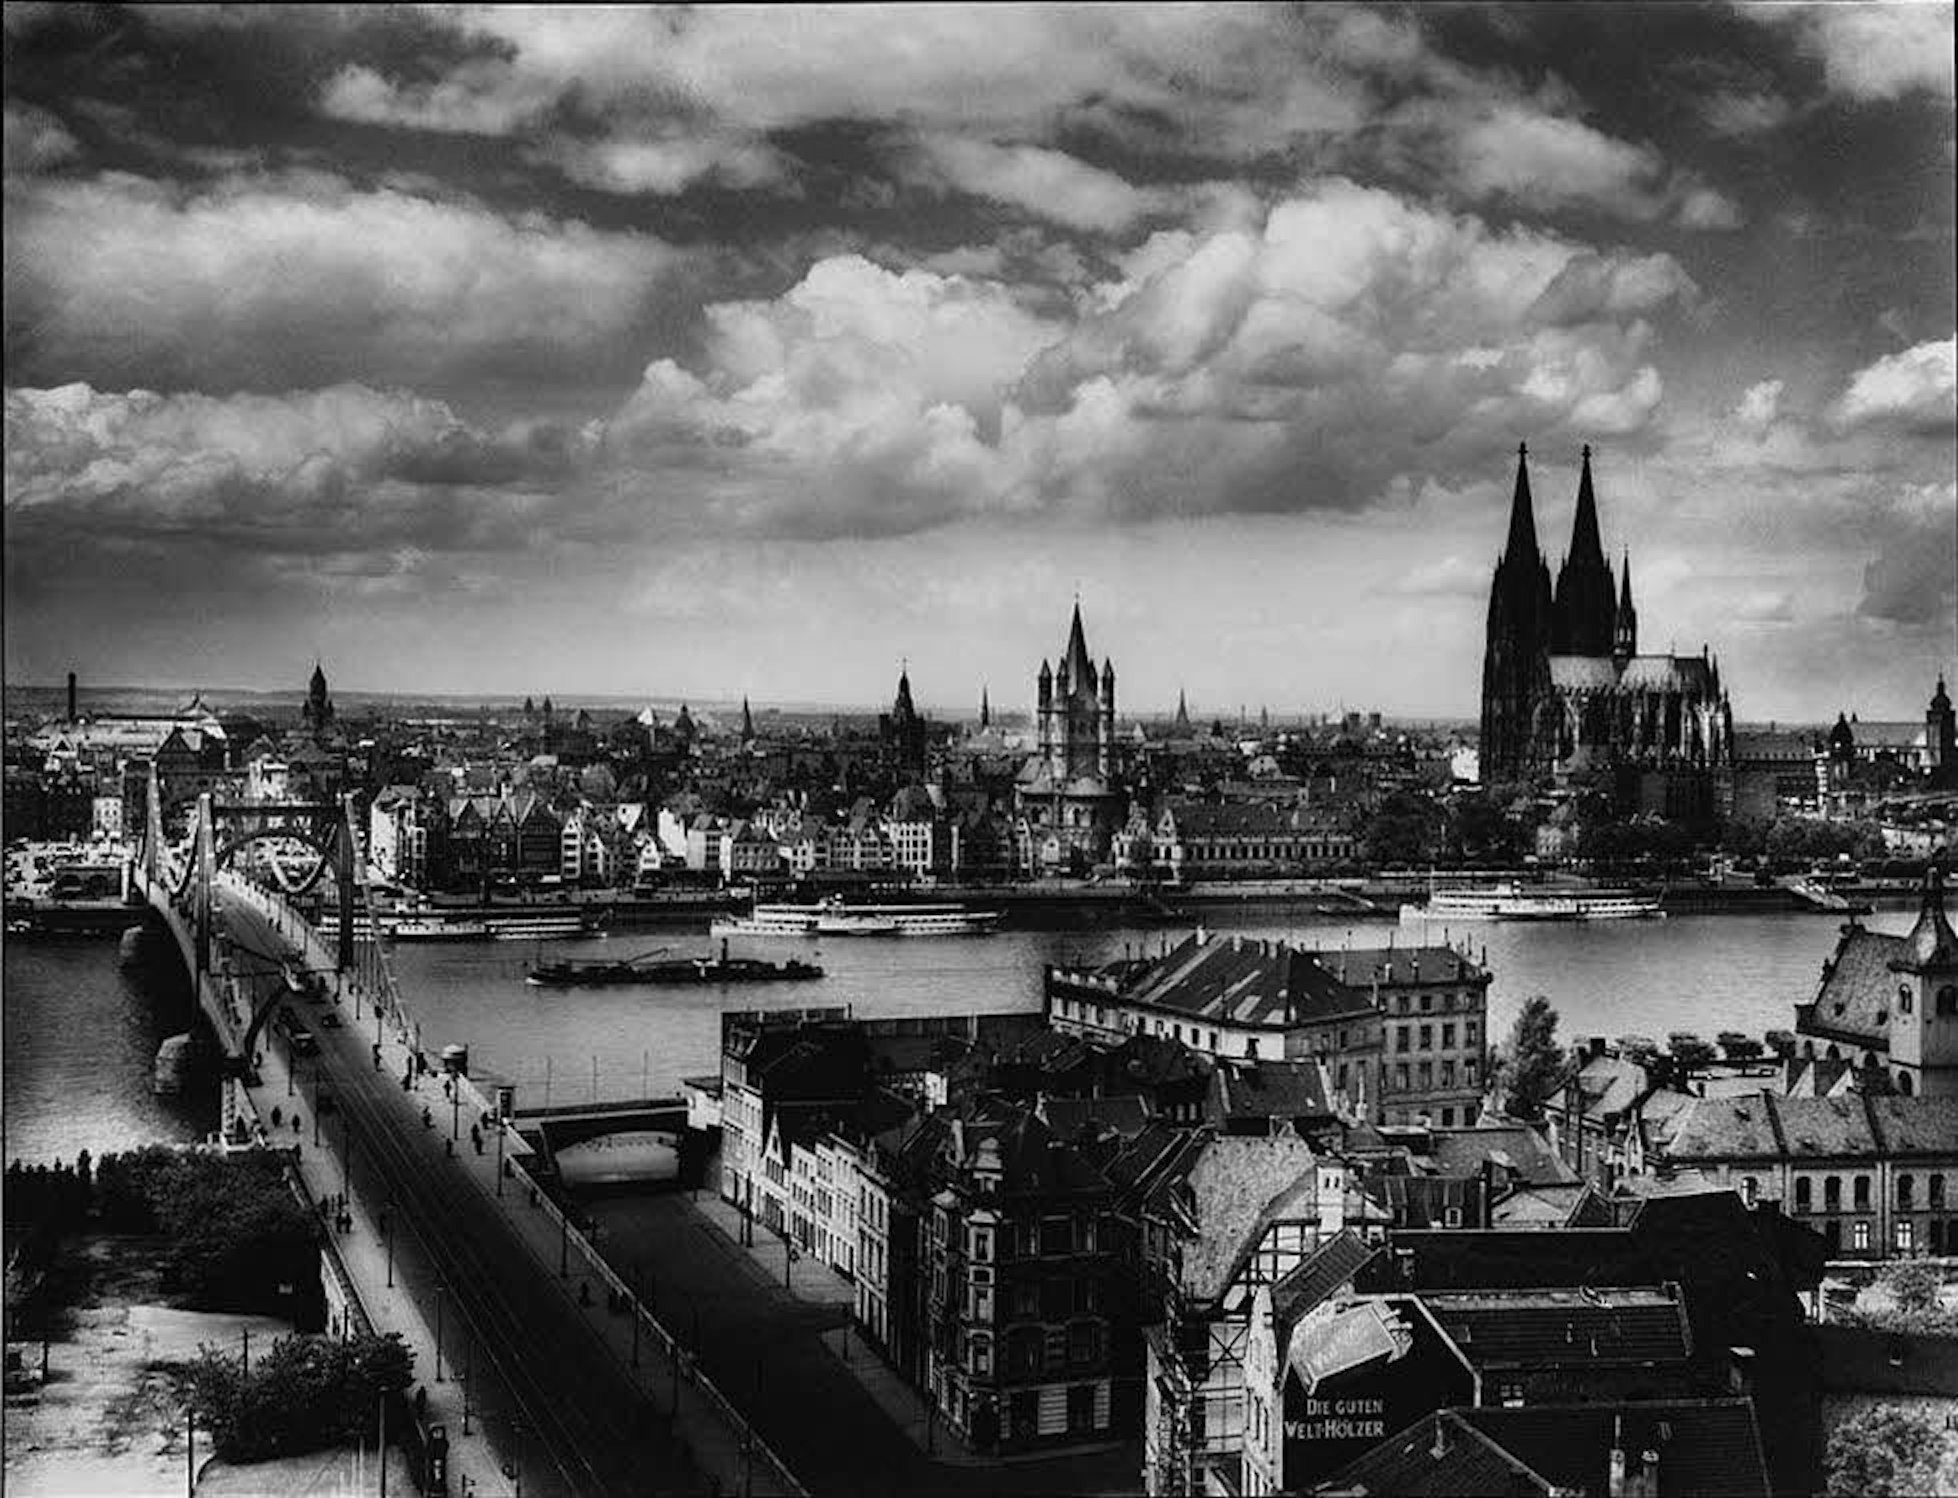 Ein Blick in die Vergangenheit: das Rheinpanorama um 1935/1938, fotografiert von August Sander